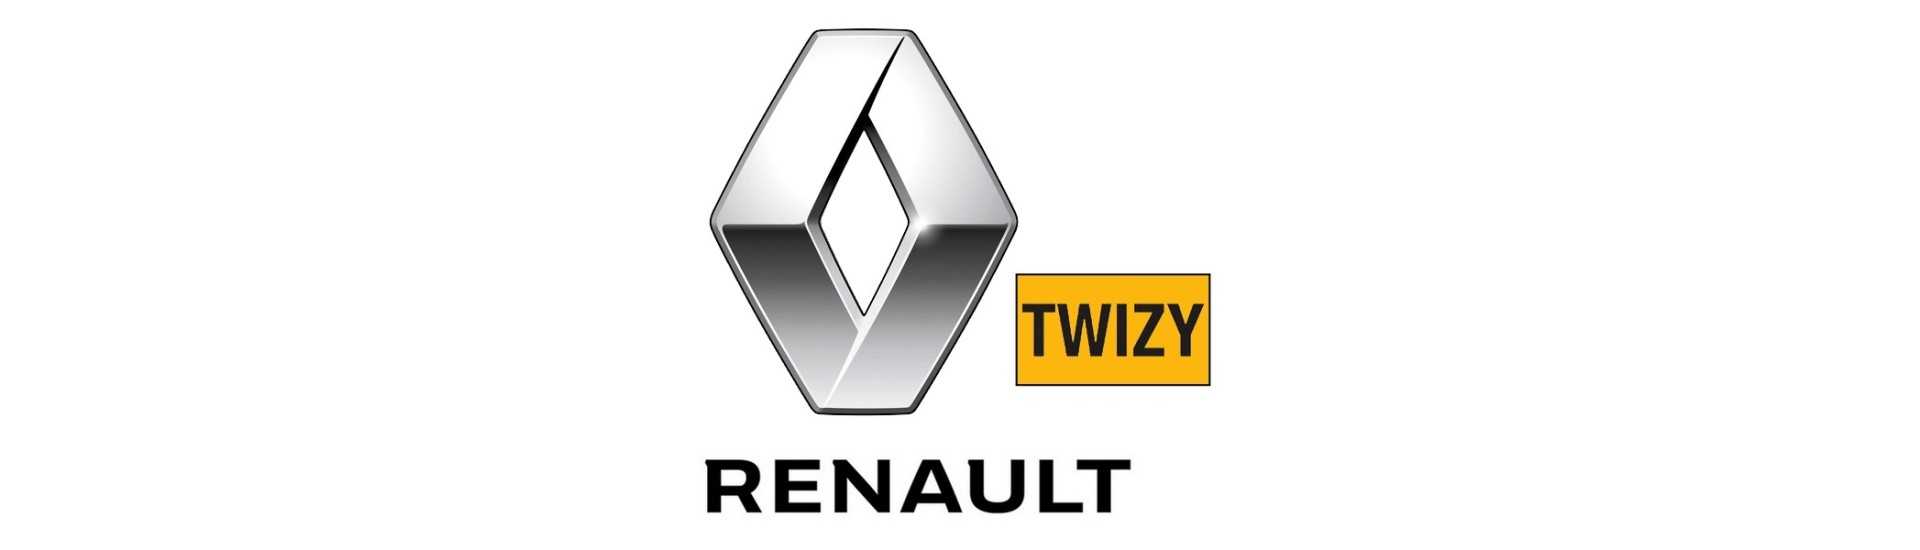 Relais / módulo de carro eletrônico sem permissão Renault Twizy